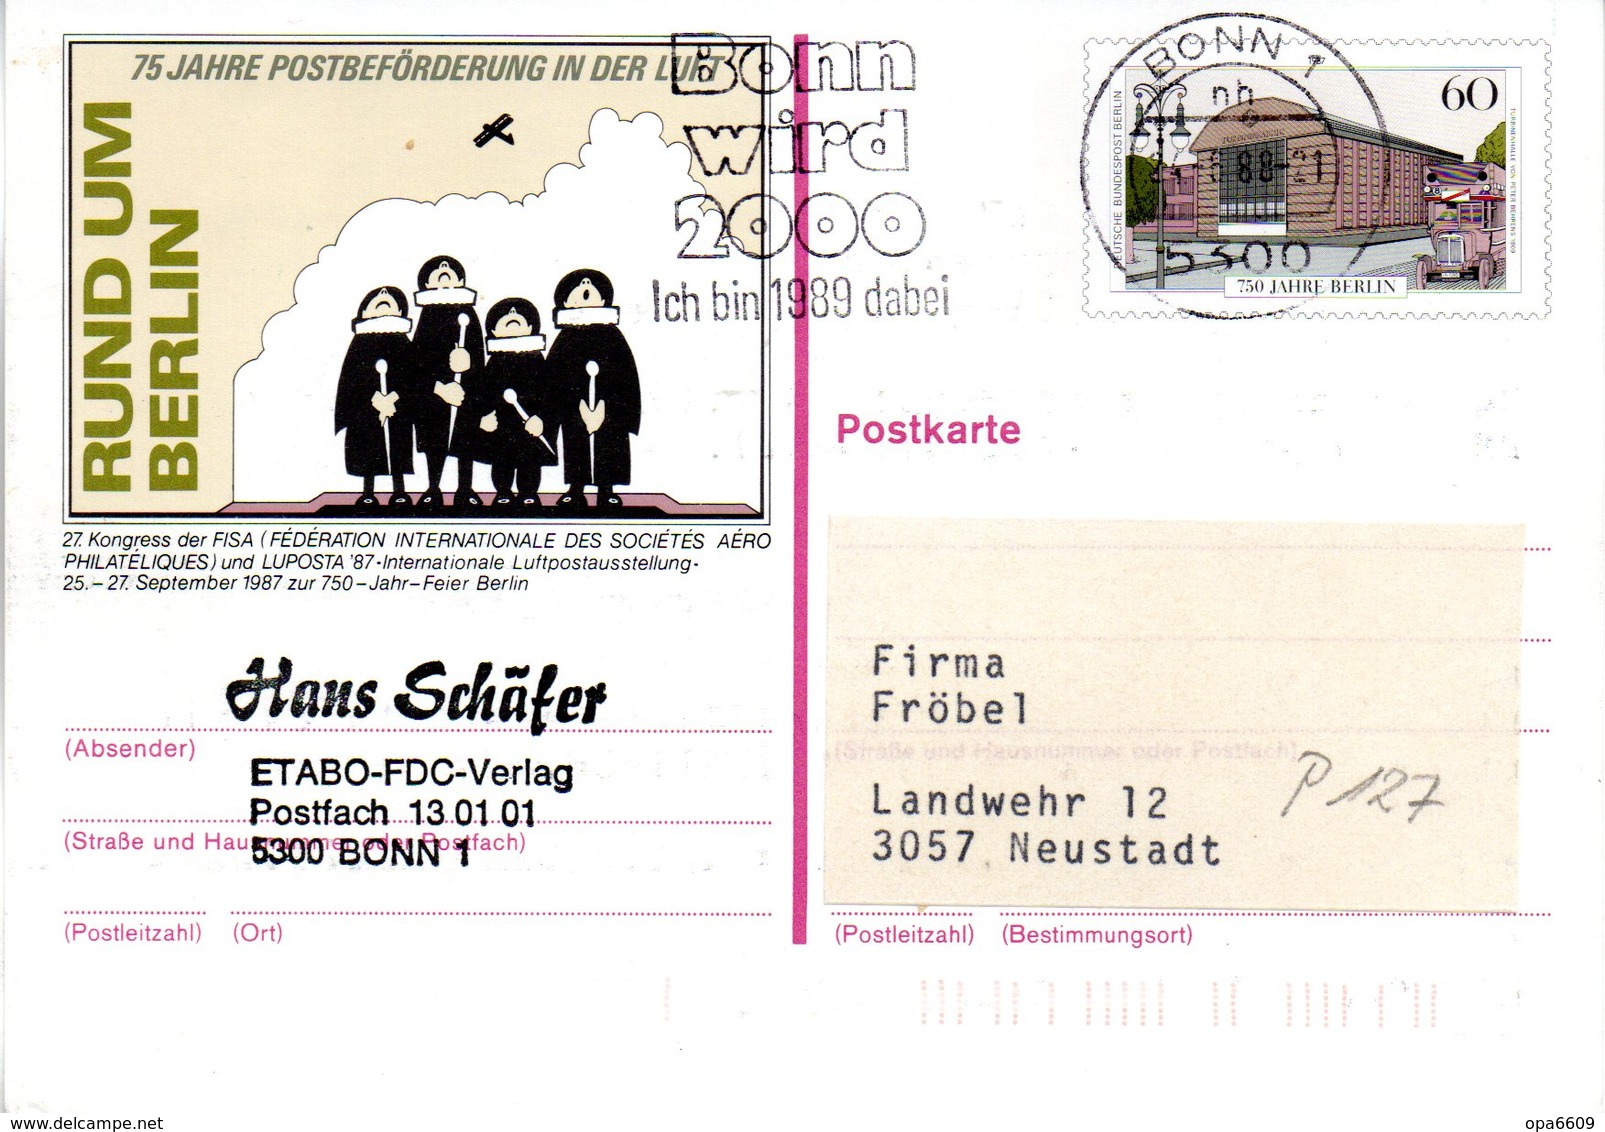 WB Amtliche Ganzsachen-Sonderpostkarte P 127 "LUPOSTA'87" Wst."750 Jahre Berlin" 60(Pf) Mehrfarbig, MWSt 24.8.88 BONN 1 - Postales - Usados